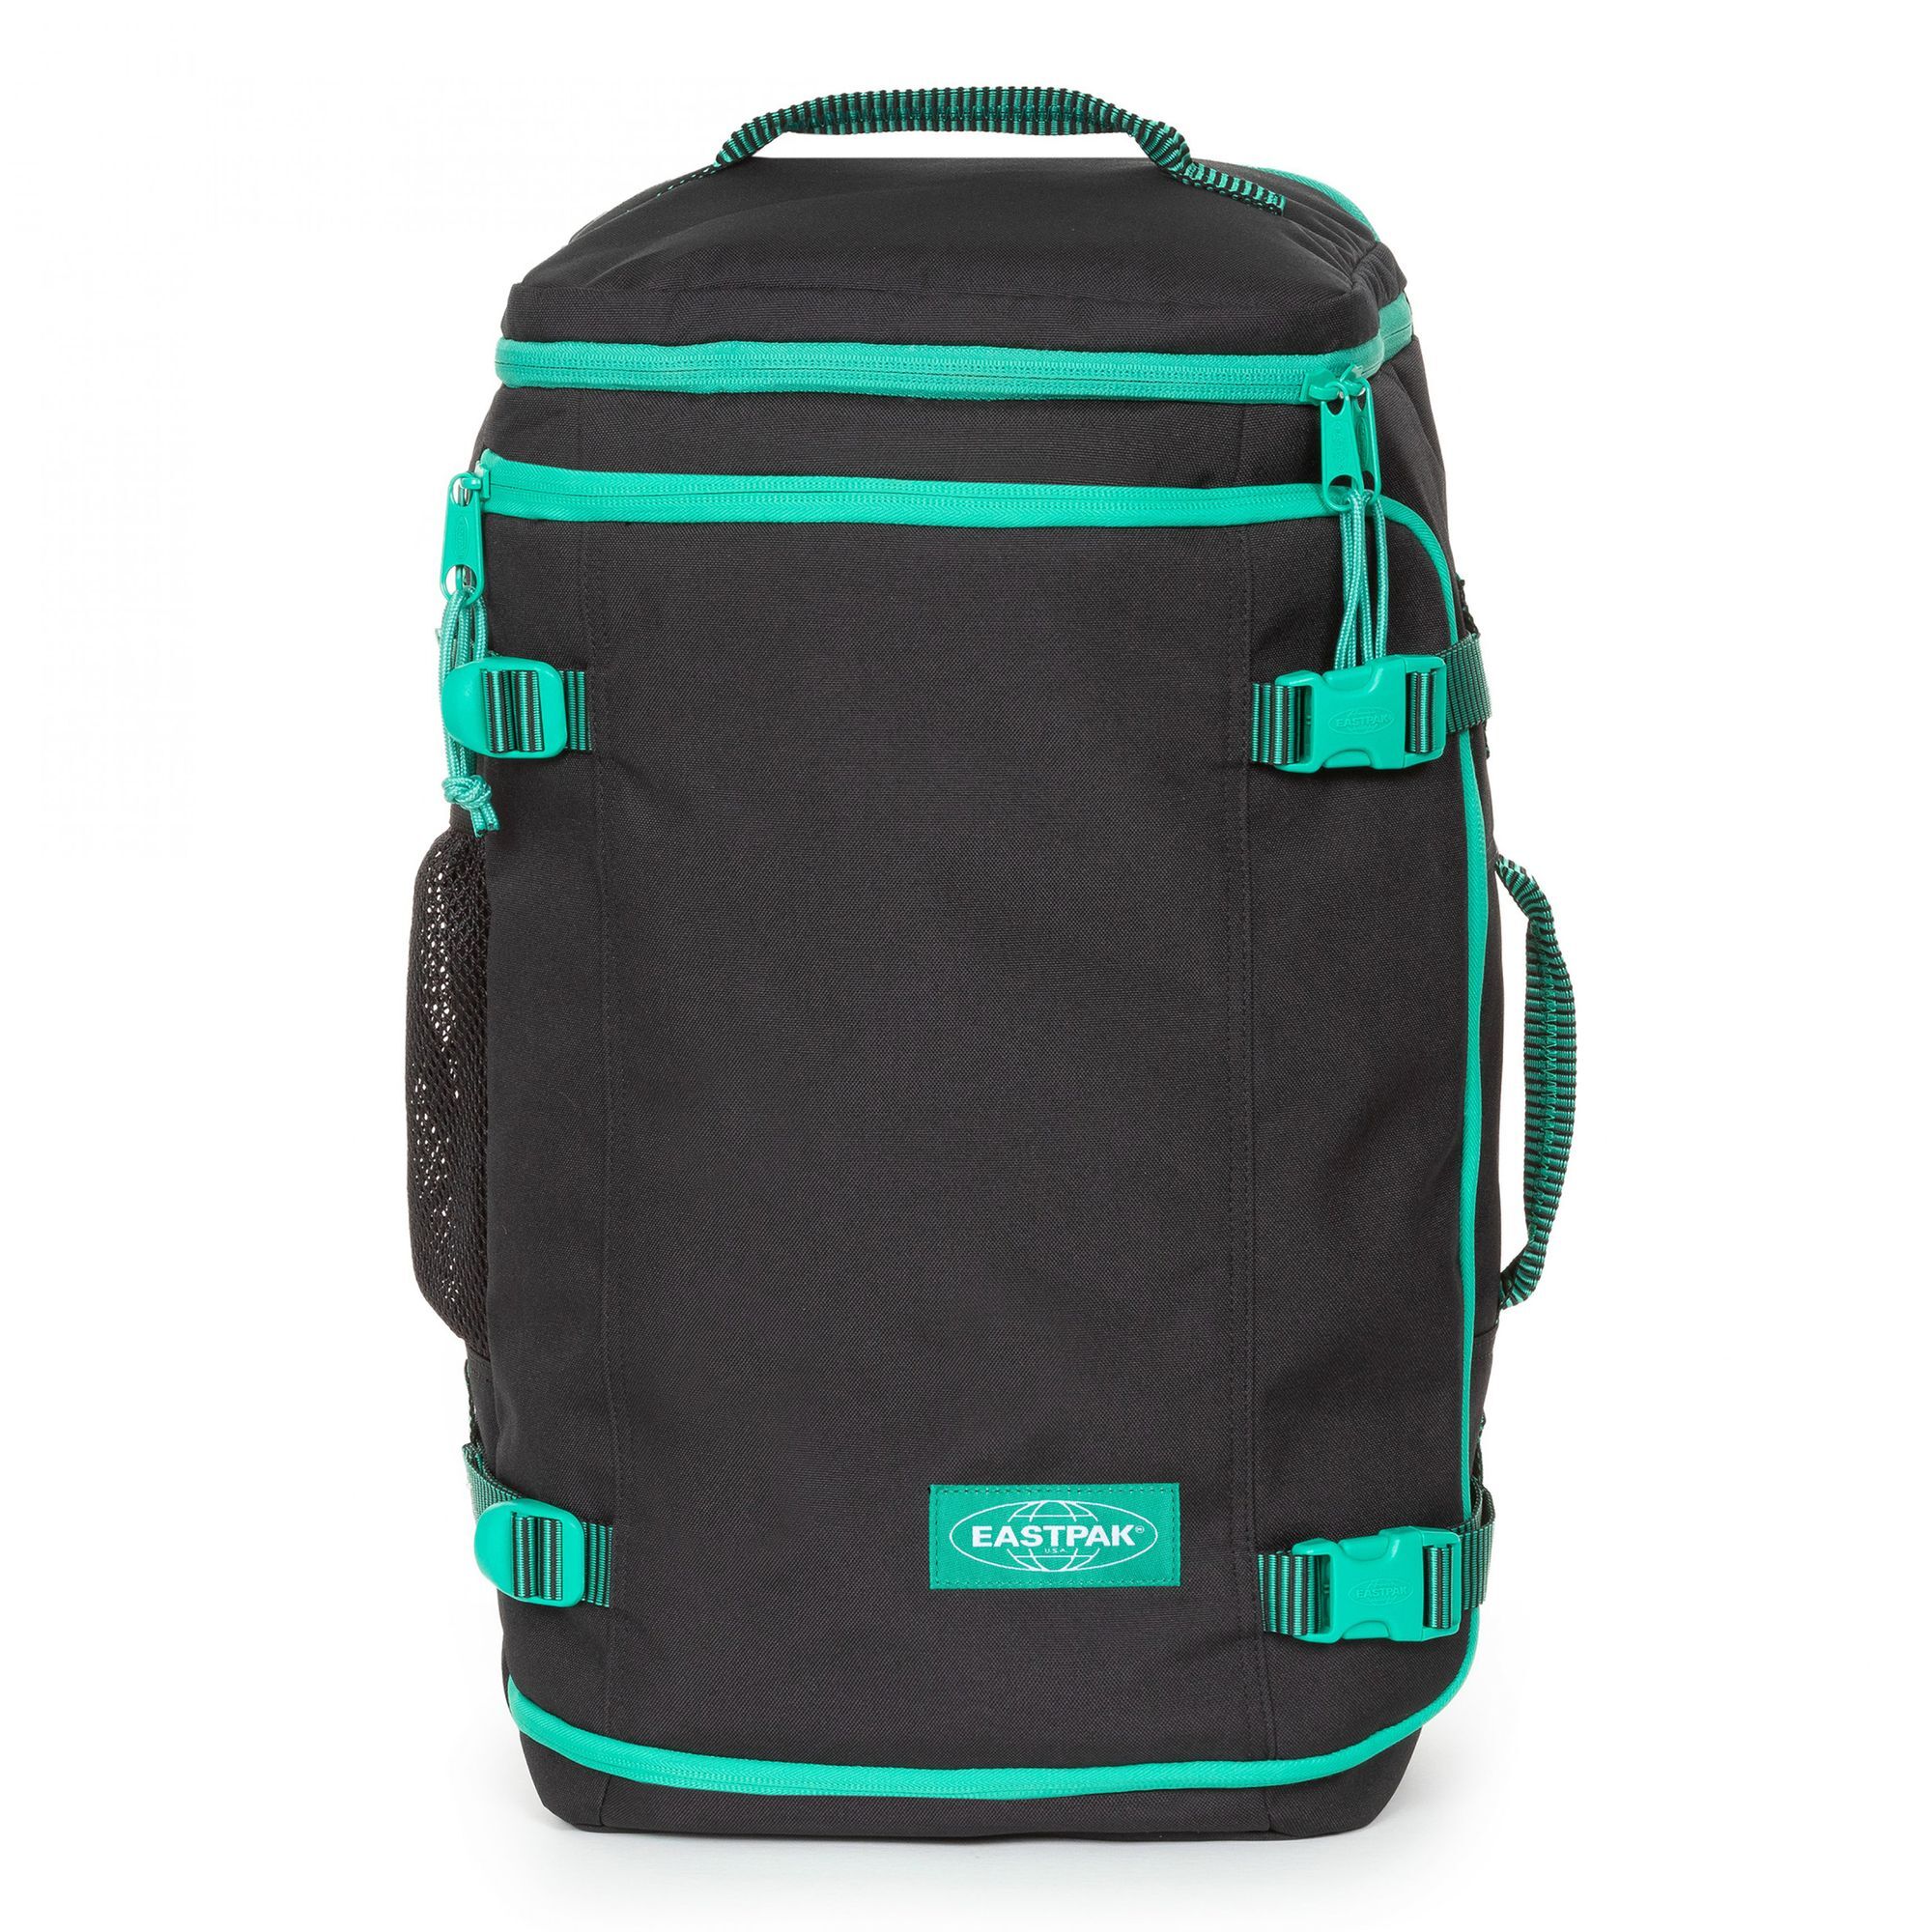 Рюкзак Eastpak Carry Pack 53 cm Laptopfach, цвет kontrast stripe black